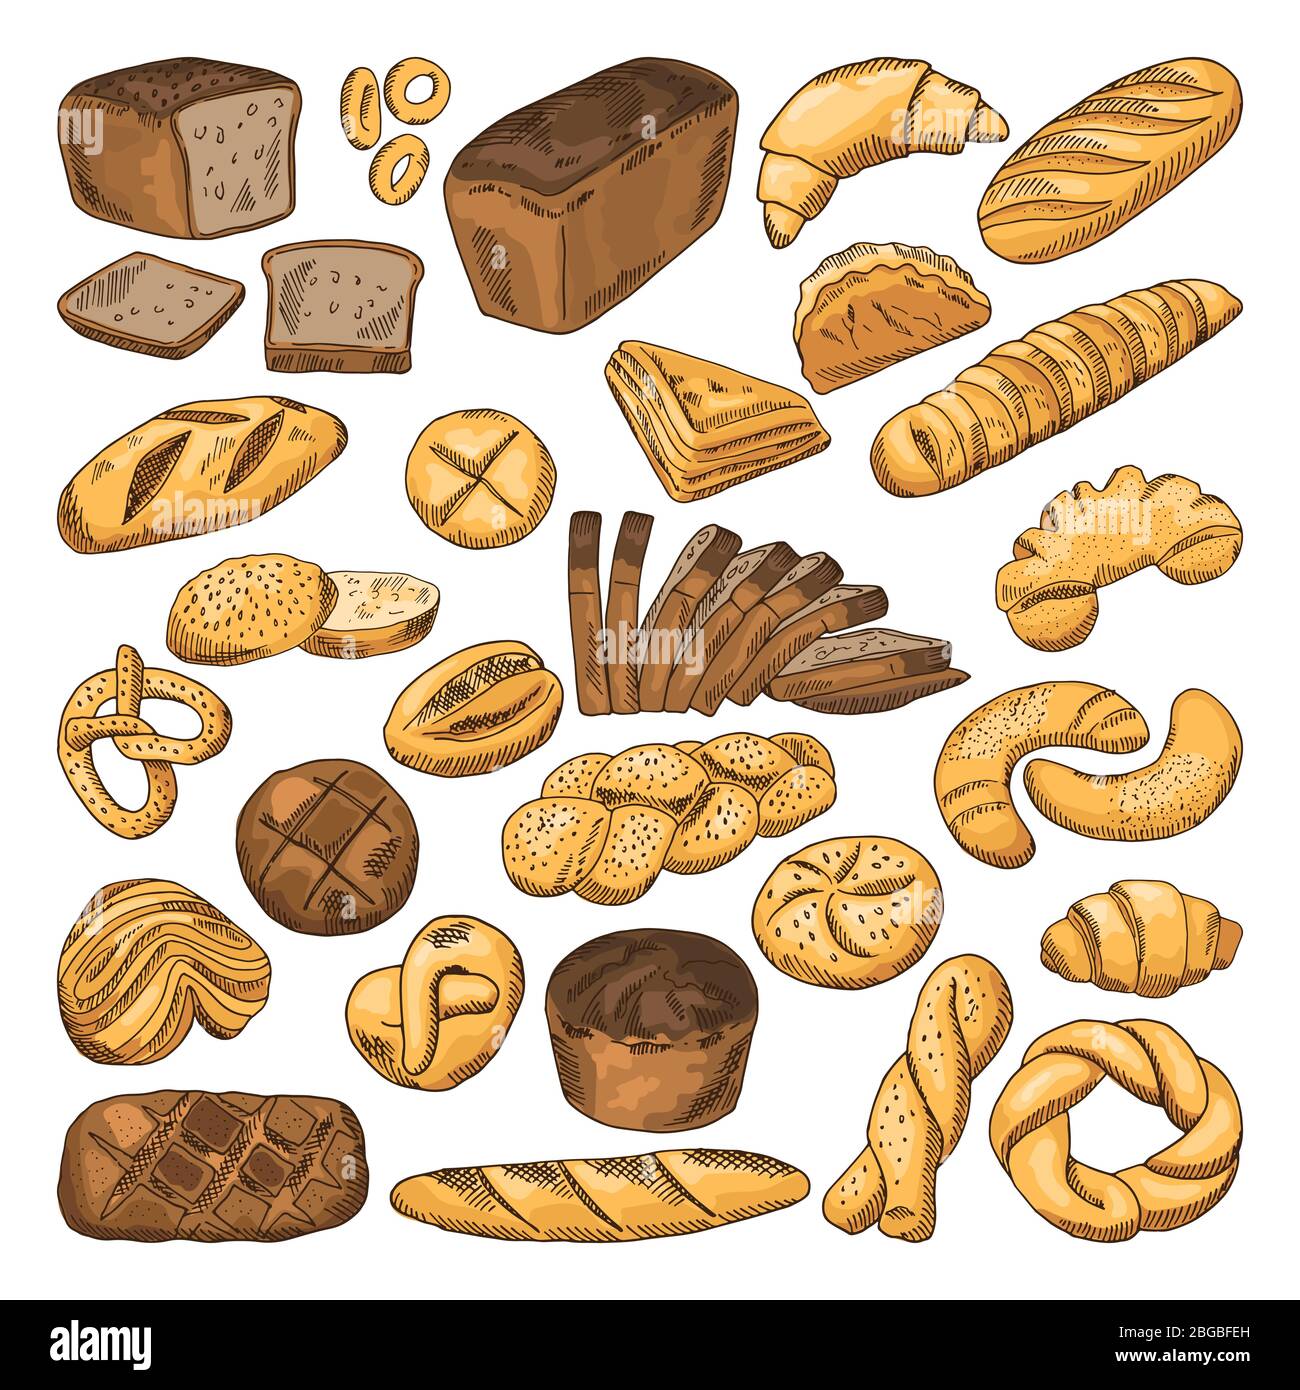 Farbige, handgezeichnete Bilder von frischem Brot und verschiedenen Arten von Backwaren. Baguette, Croissants und andere Stock Vektor